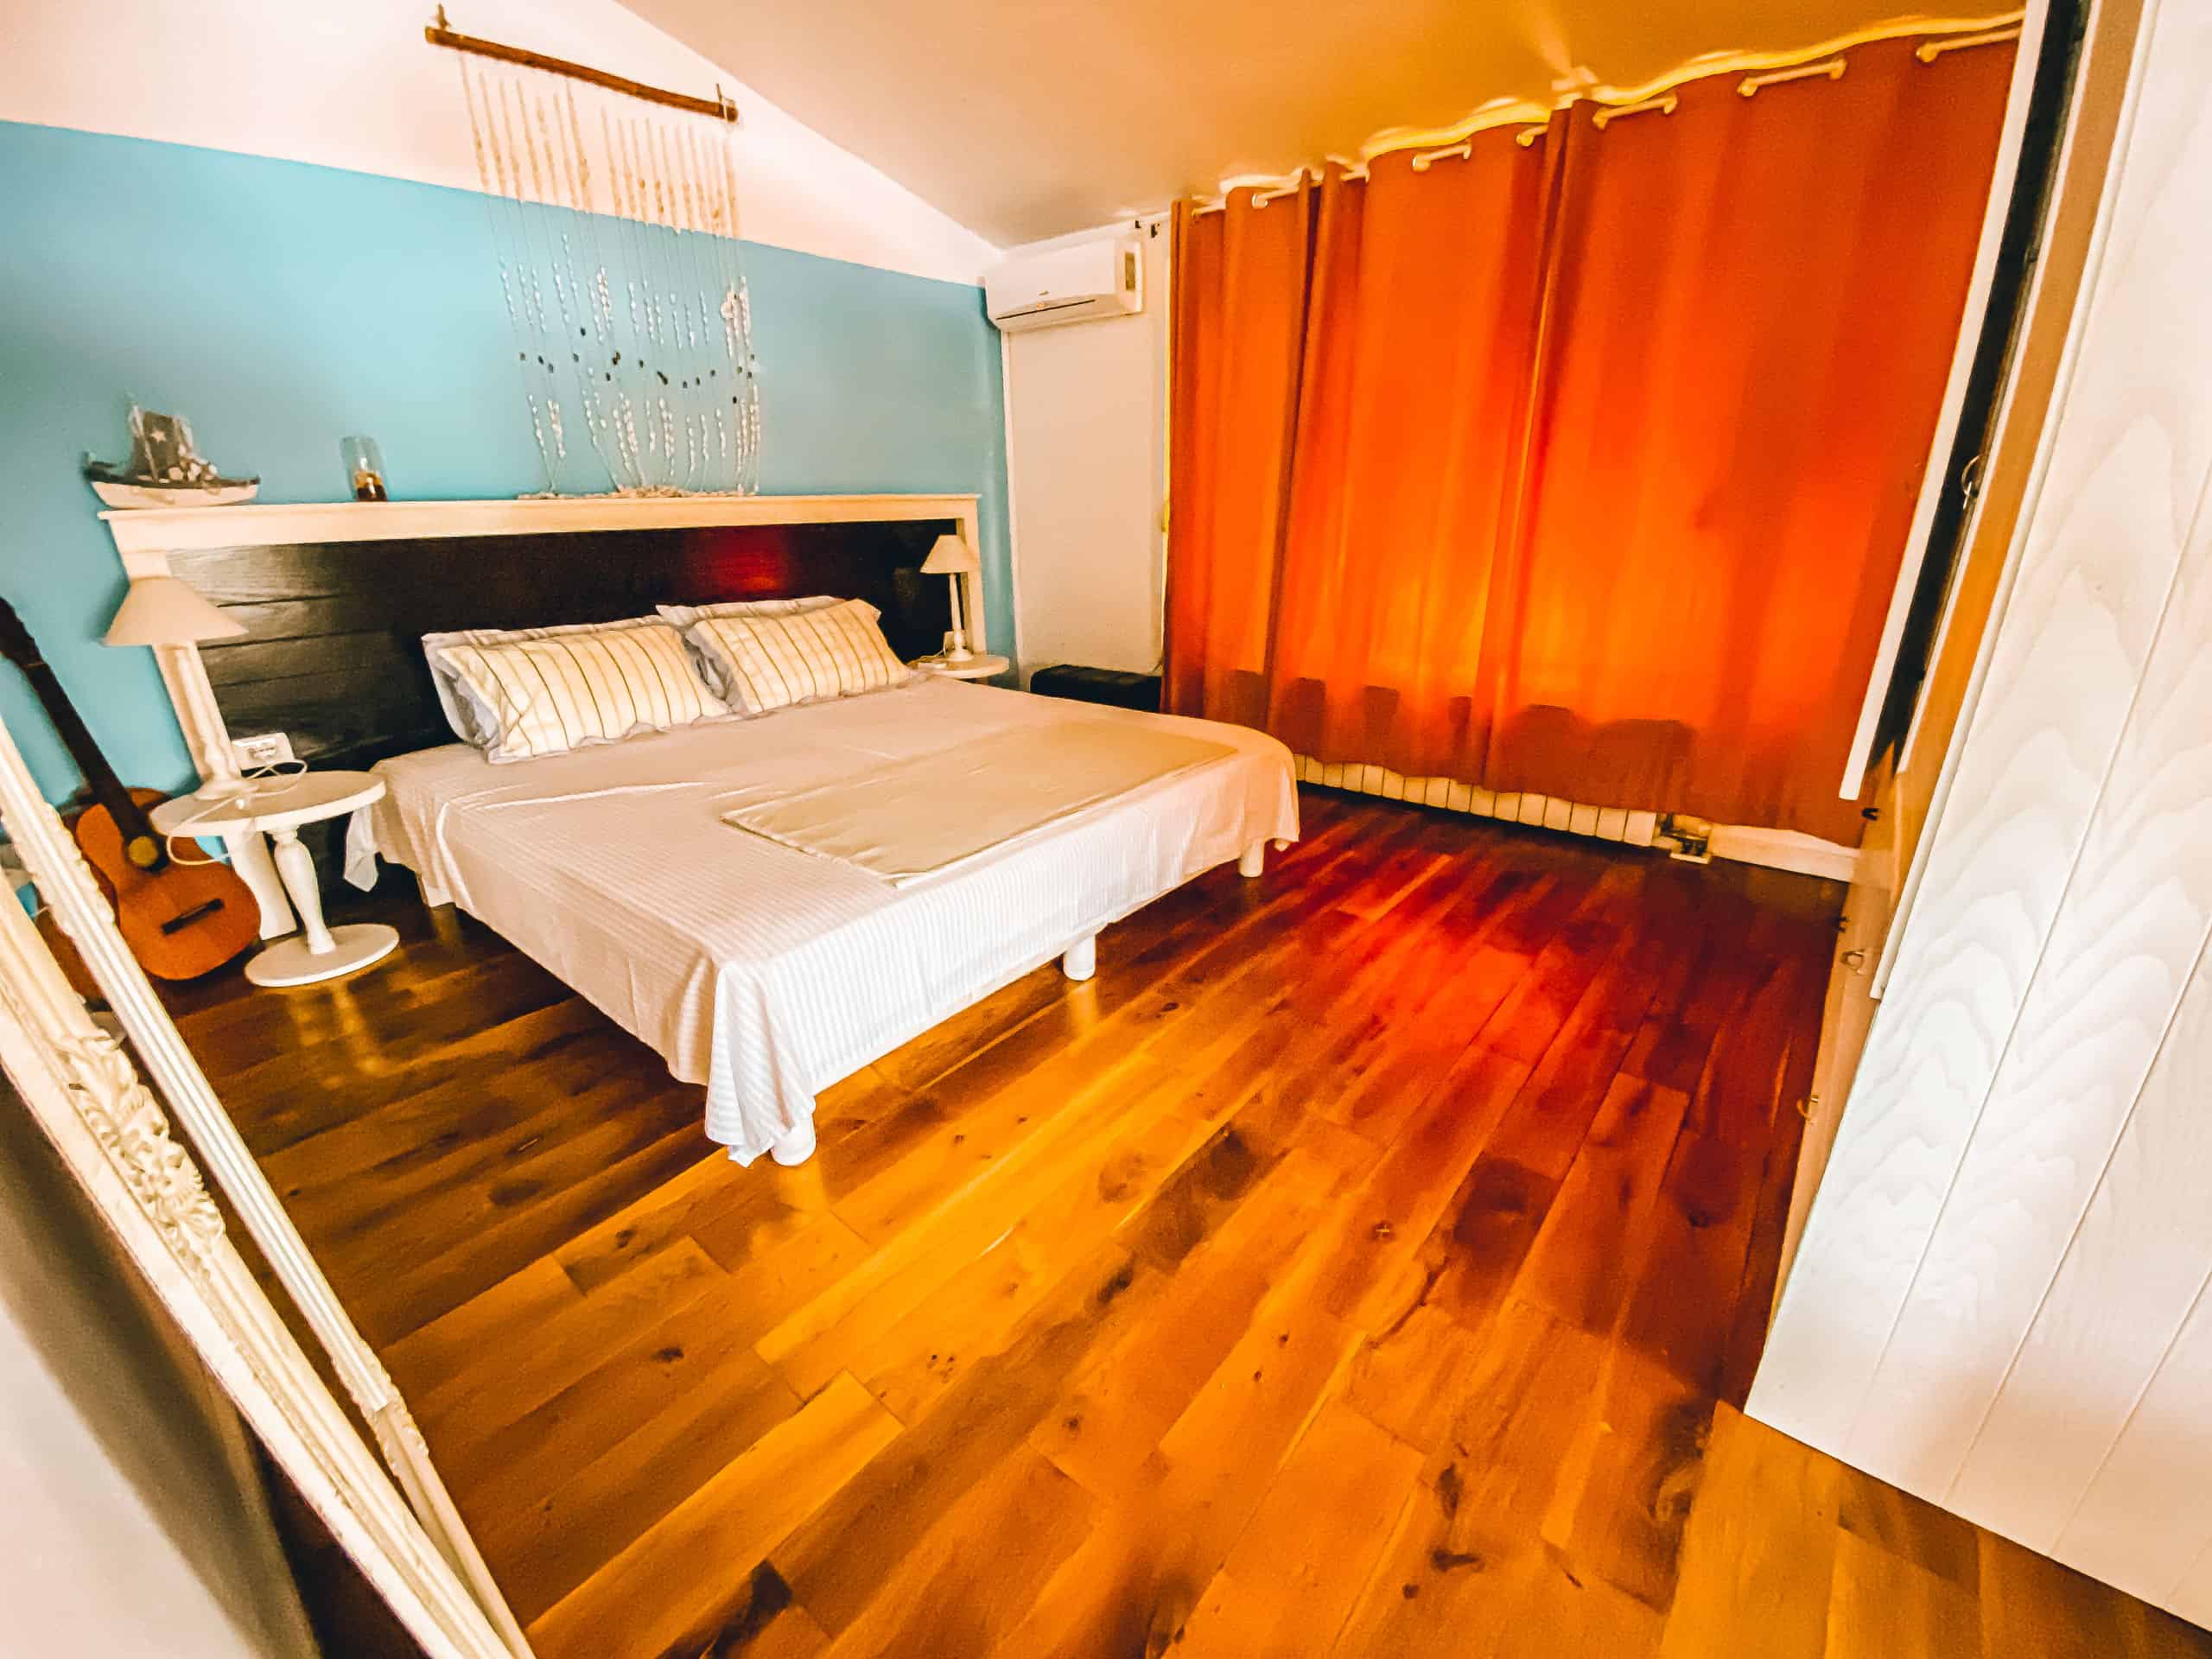 Apartments Bellavista urlop wakacje w Albanii Qerret Kavaje Durrës apartament do wynajęcia